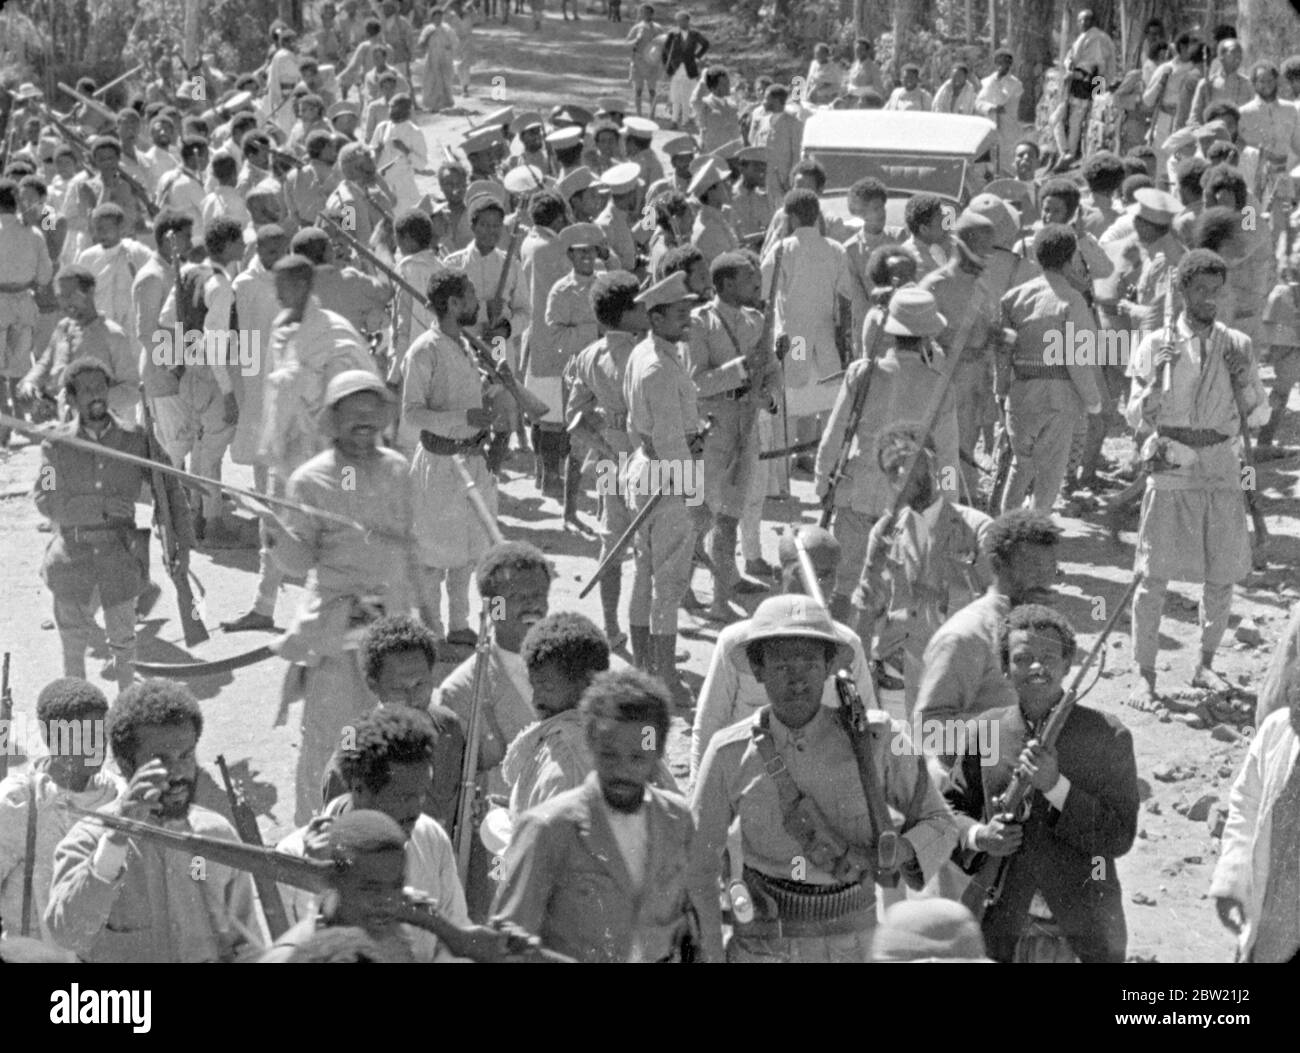 Italienischer Äthiopienkrieg, 1935 -1936 die Bombardierung des äthiopischen Dorfes Dessye durch italienische Flugzeuge. Bewaffnete äthiopische Truppen im Dorf . Dezember 1935 Stockfoto